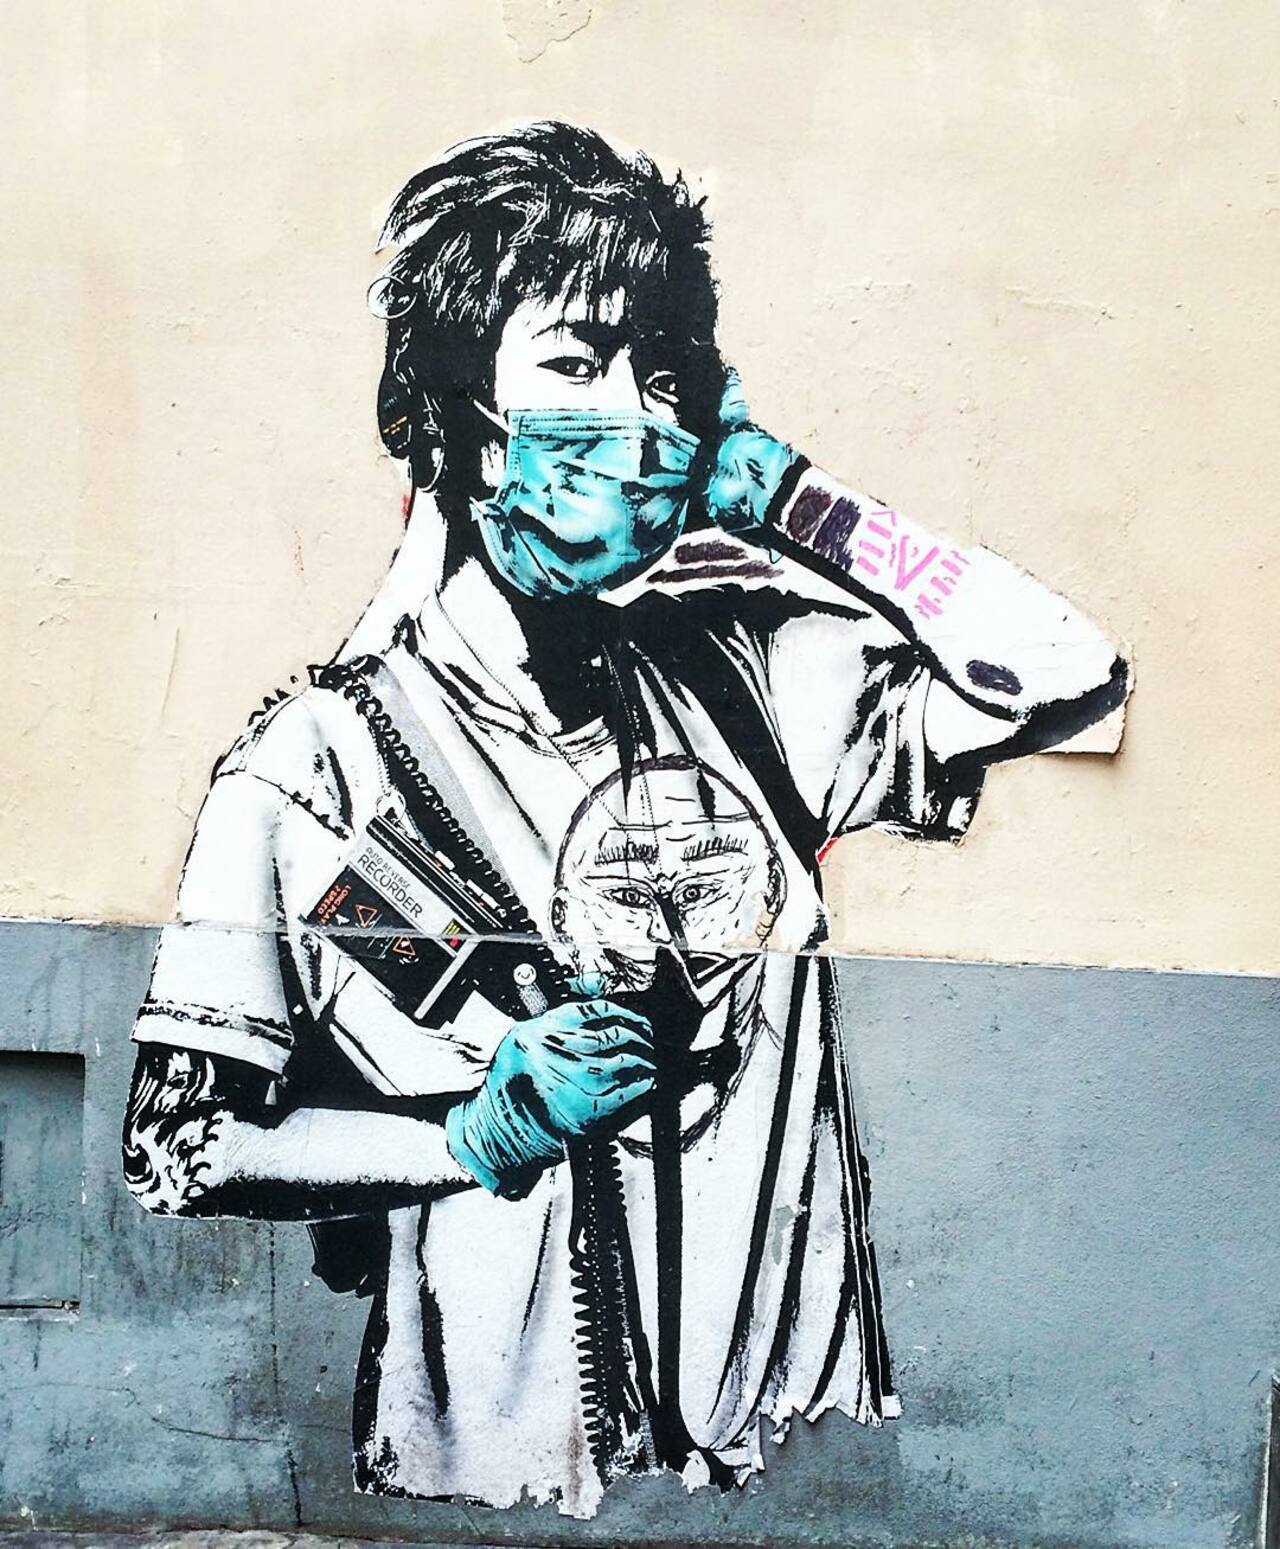 #Paris #graffiti photo by @julosteart http://ift.tt/1LuBv5i #StreetArt https://t.co/y2sS5BekRl